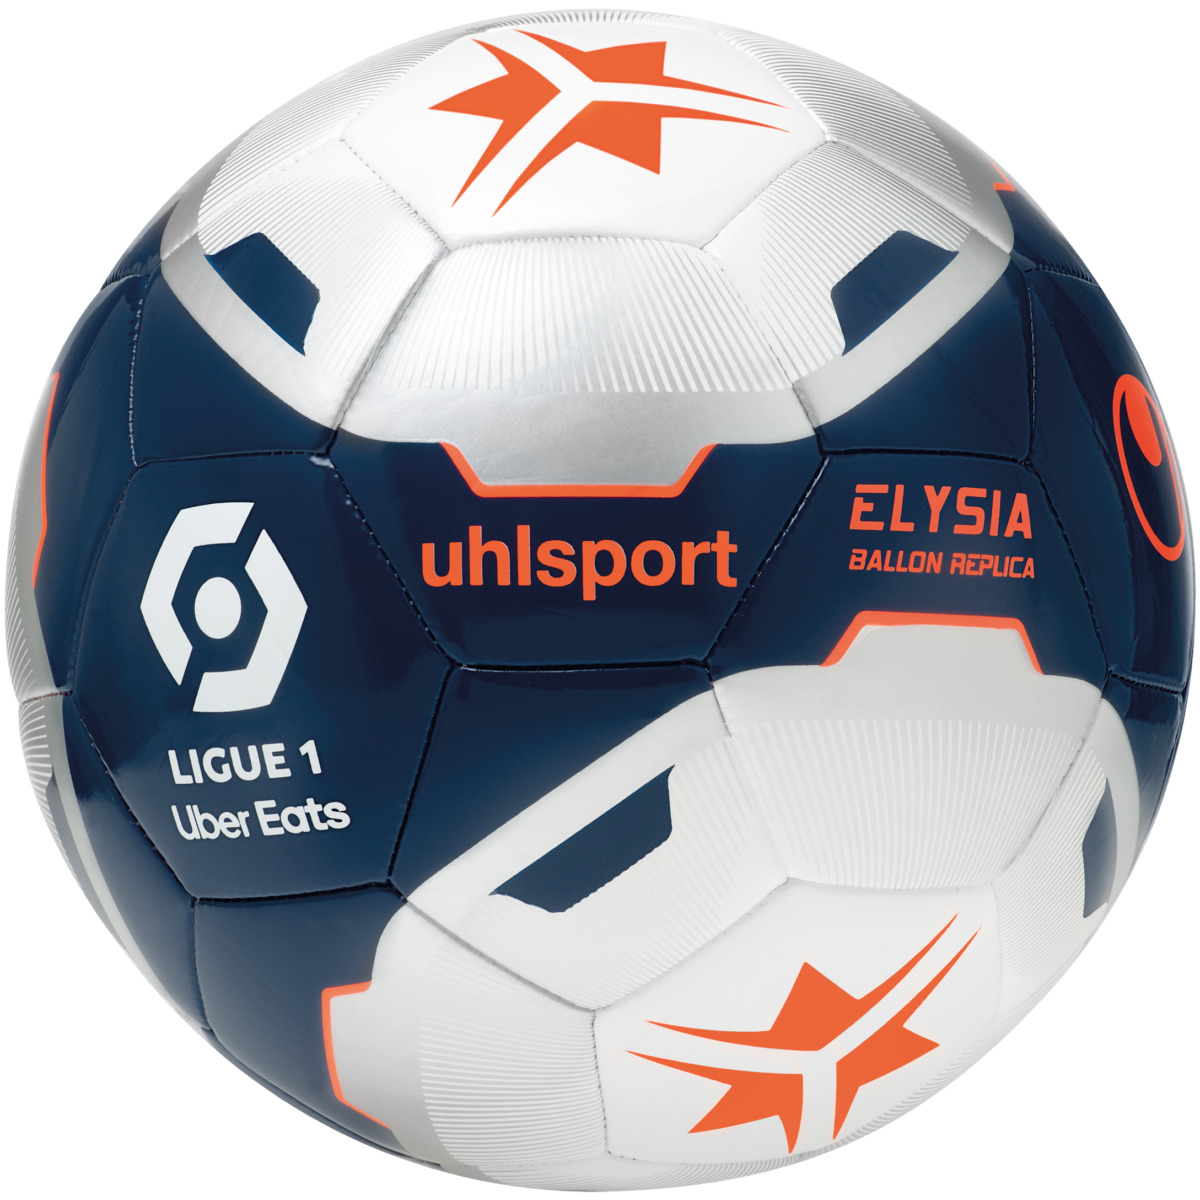 Official Ligue 1 Uber Eats Footballs - uhlsport Online Shop